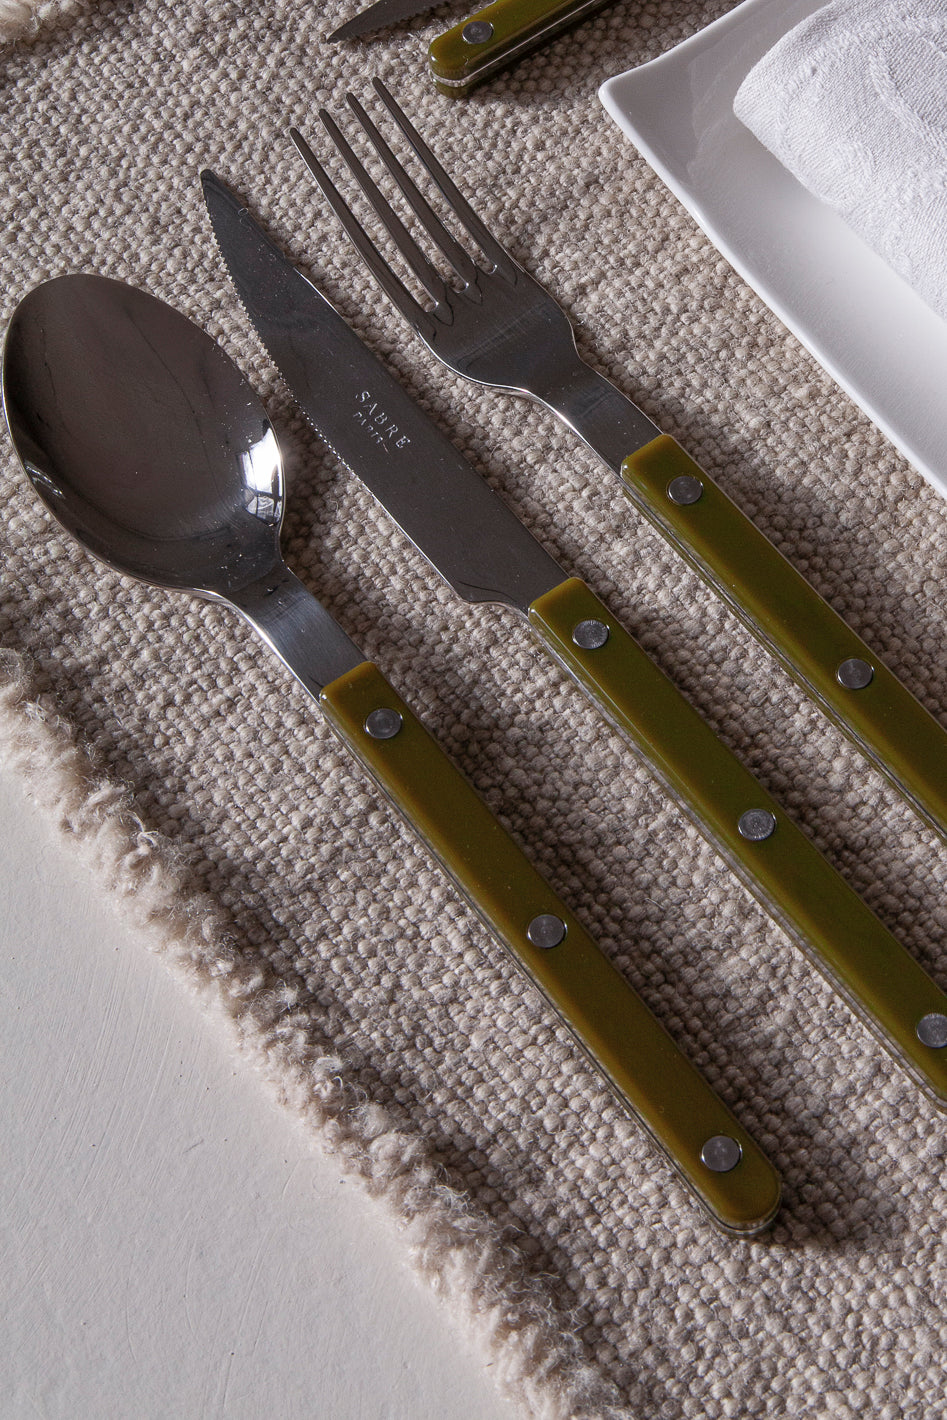 Bistrot green cutlery 6 pax. Saber Paris